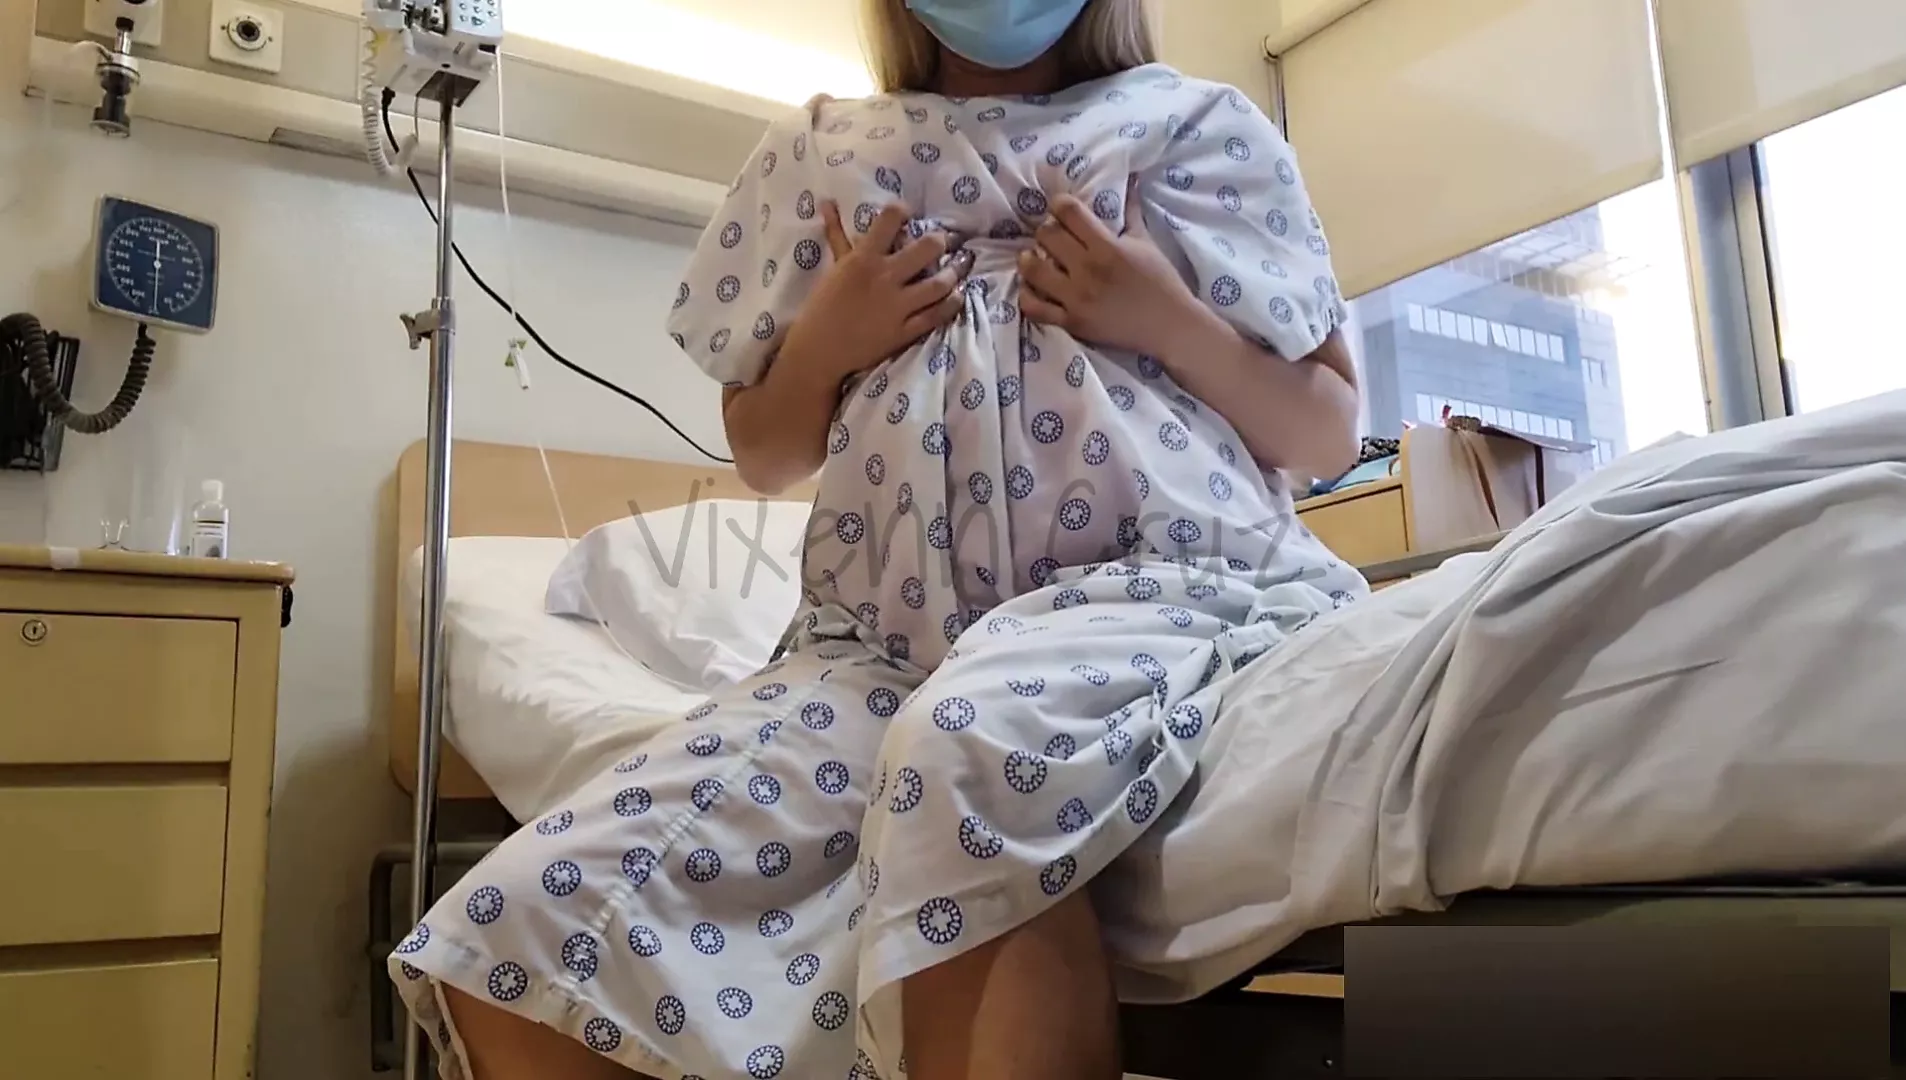 عام محفوف بالمخاطر - ينفث المريض قرنية في سرير المستشفى - فيروسي